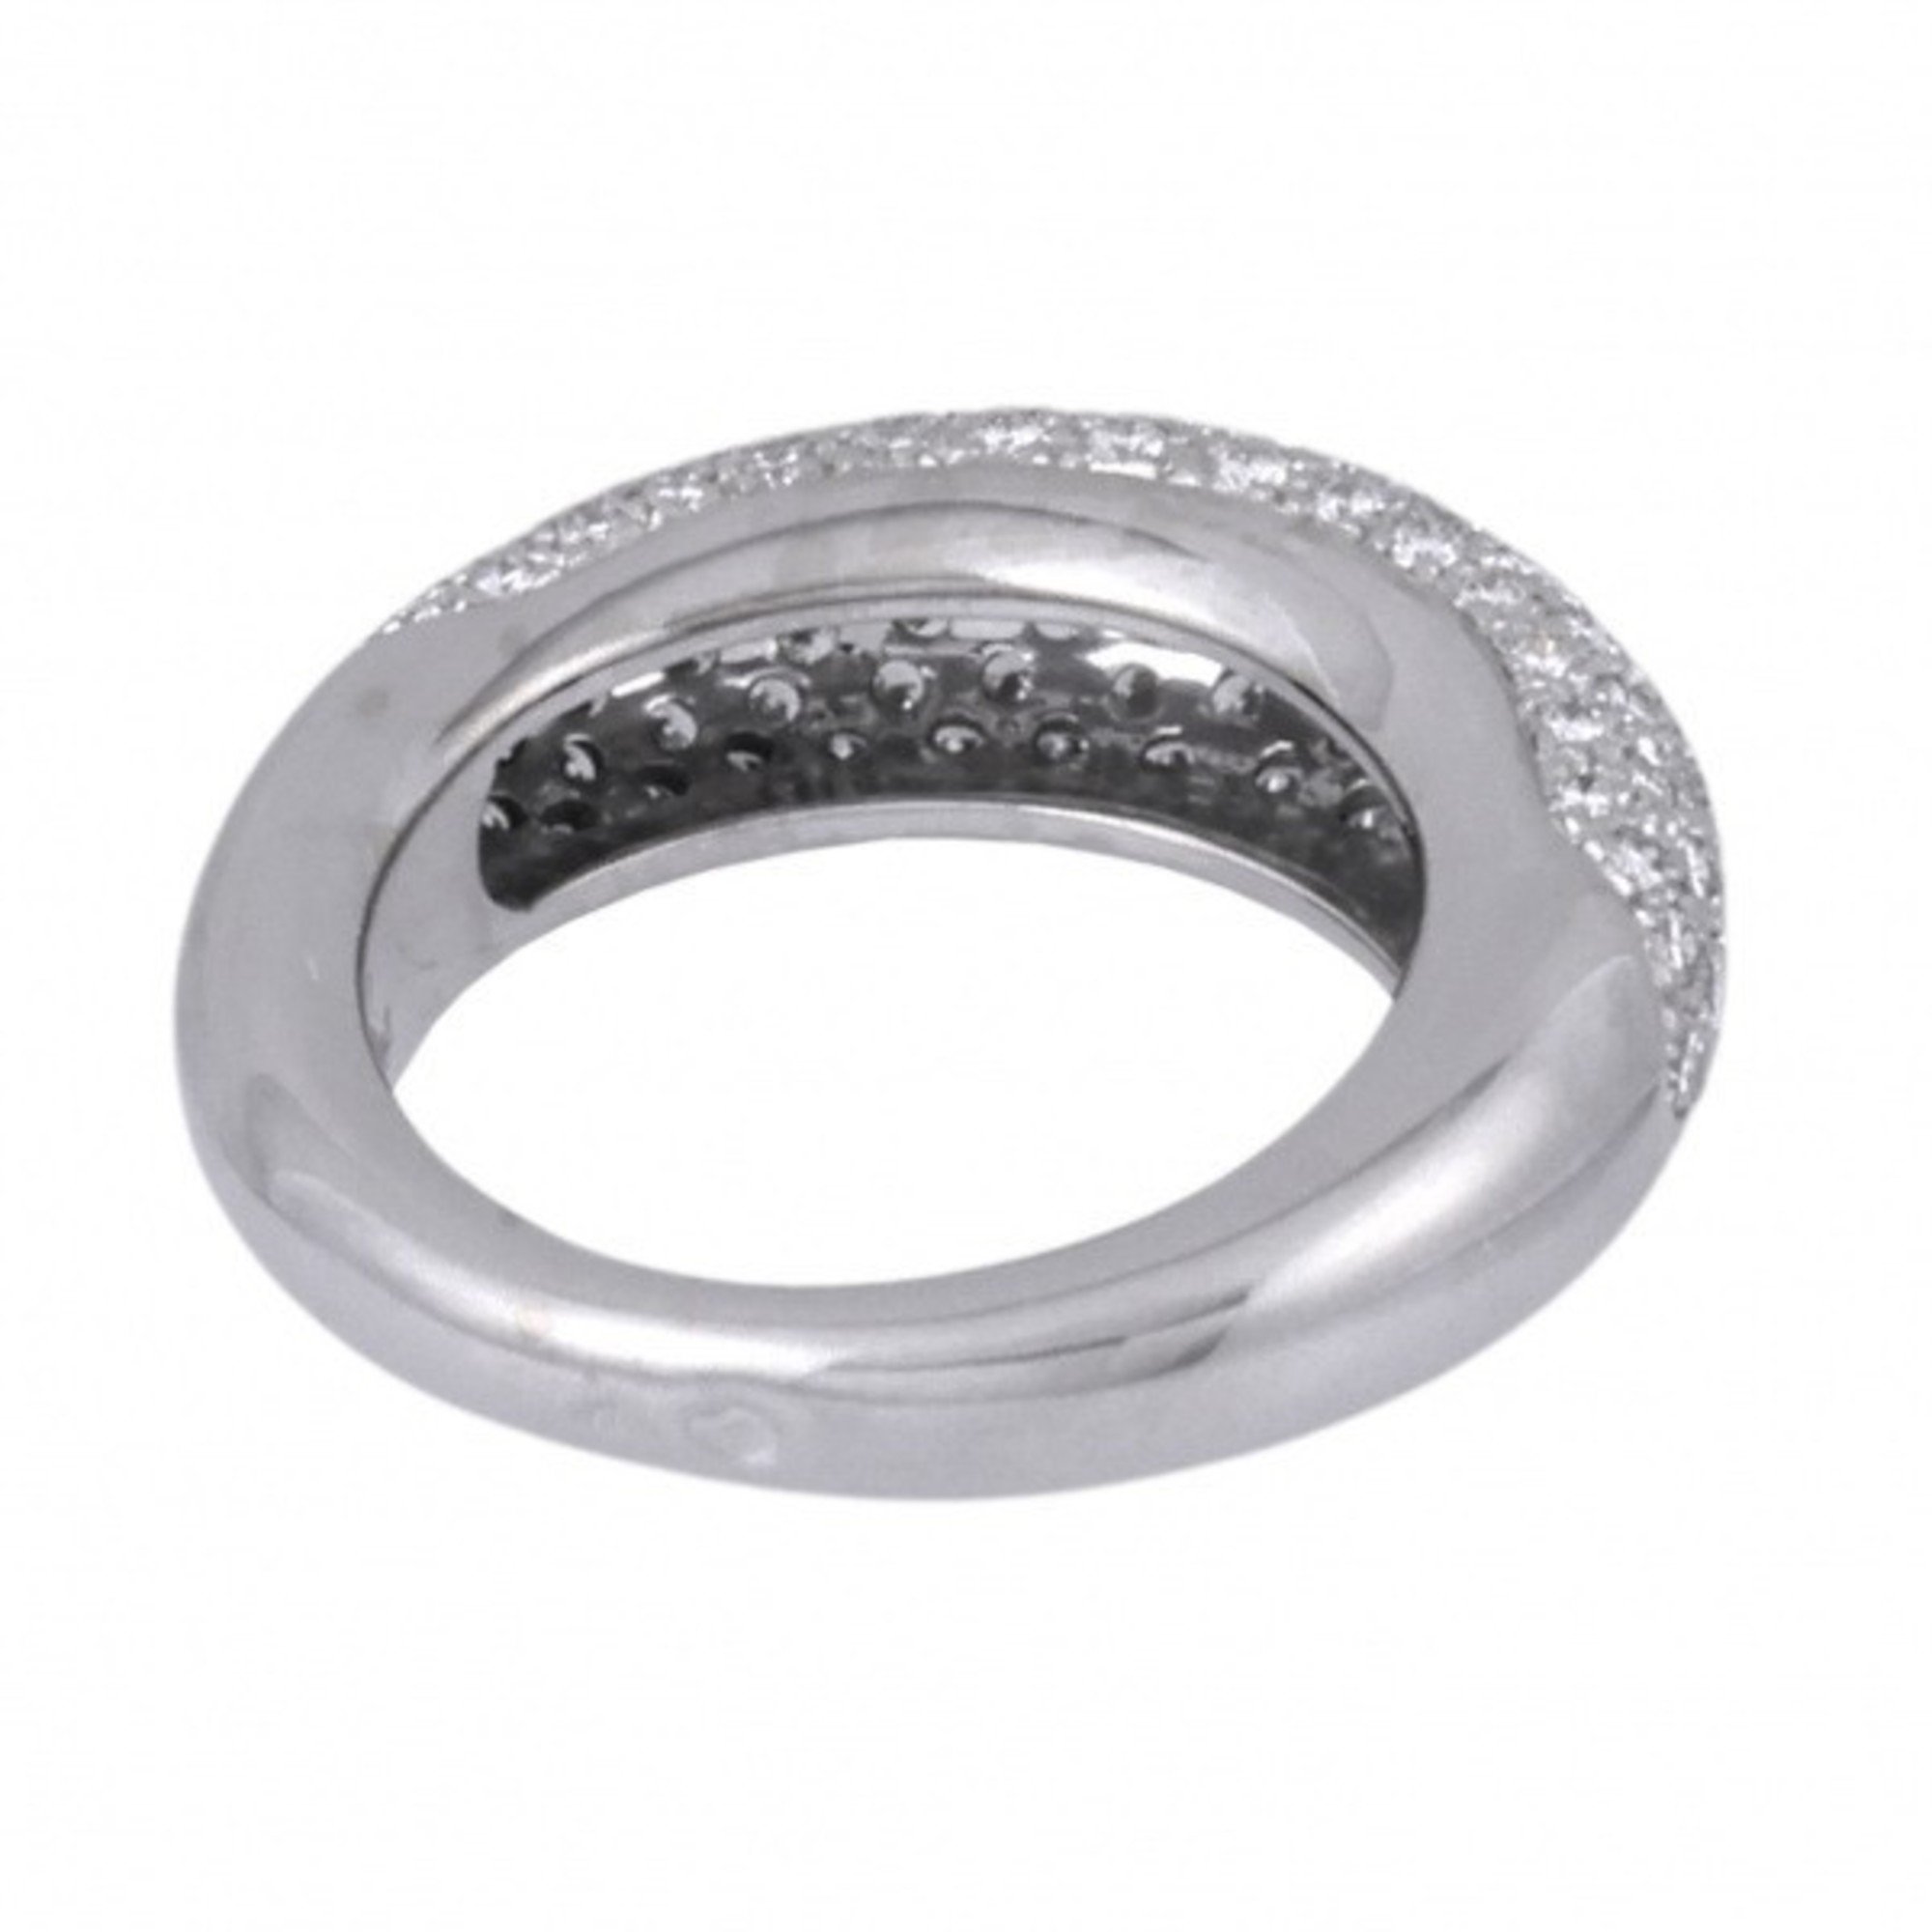 Chaumet Anau Caviar Ring K18WG White gold